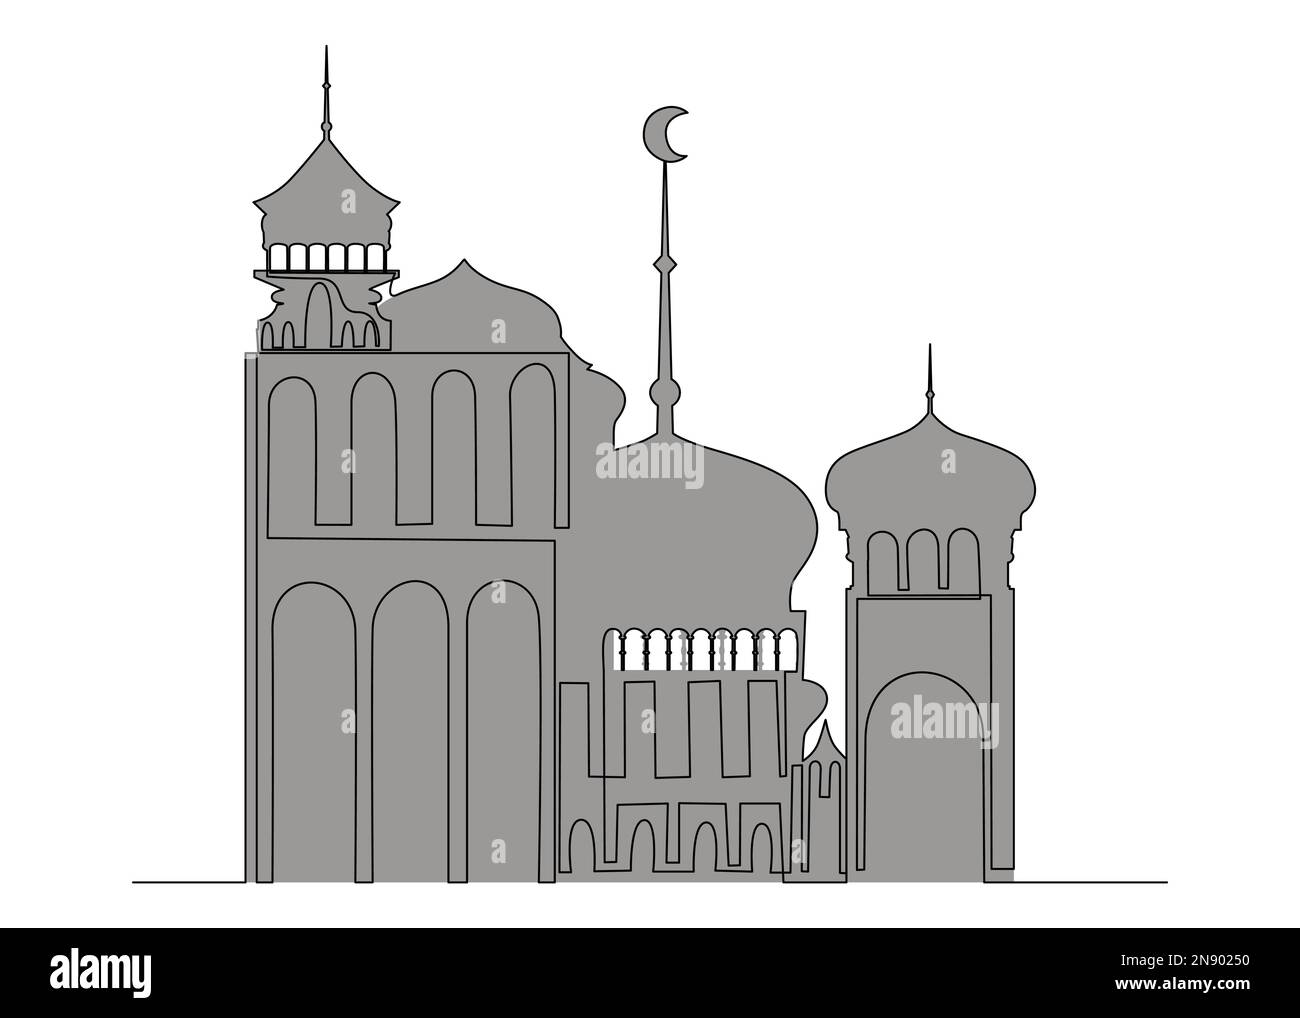 Una linea continua di poster del Ramadan con architettura araba. Concetto di vettore di illustrazione a linea sottile. Disegno di contorno idee creative. Illustrazione Vettoriale